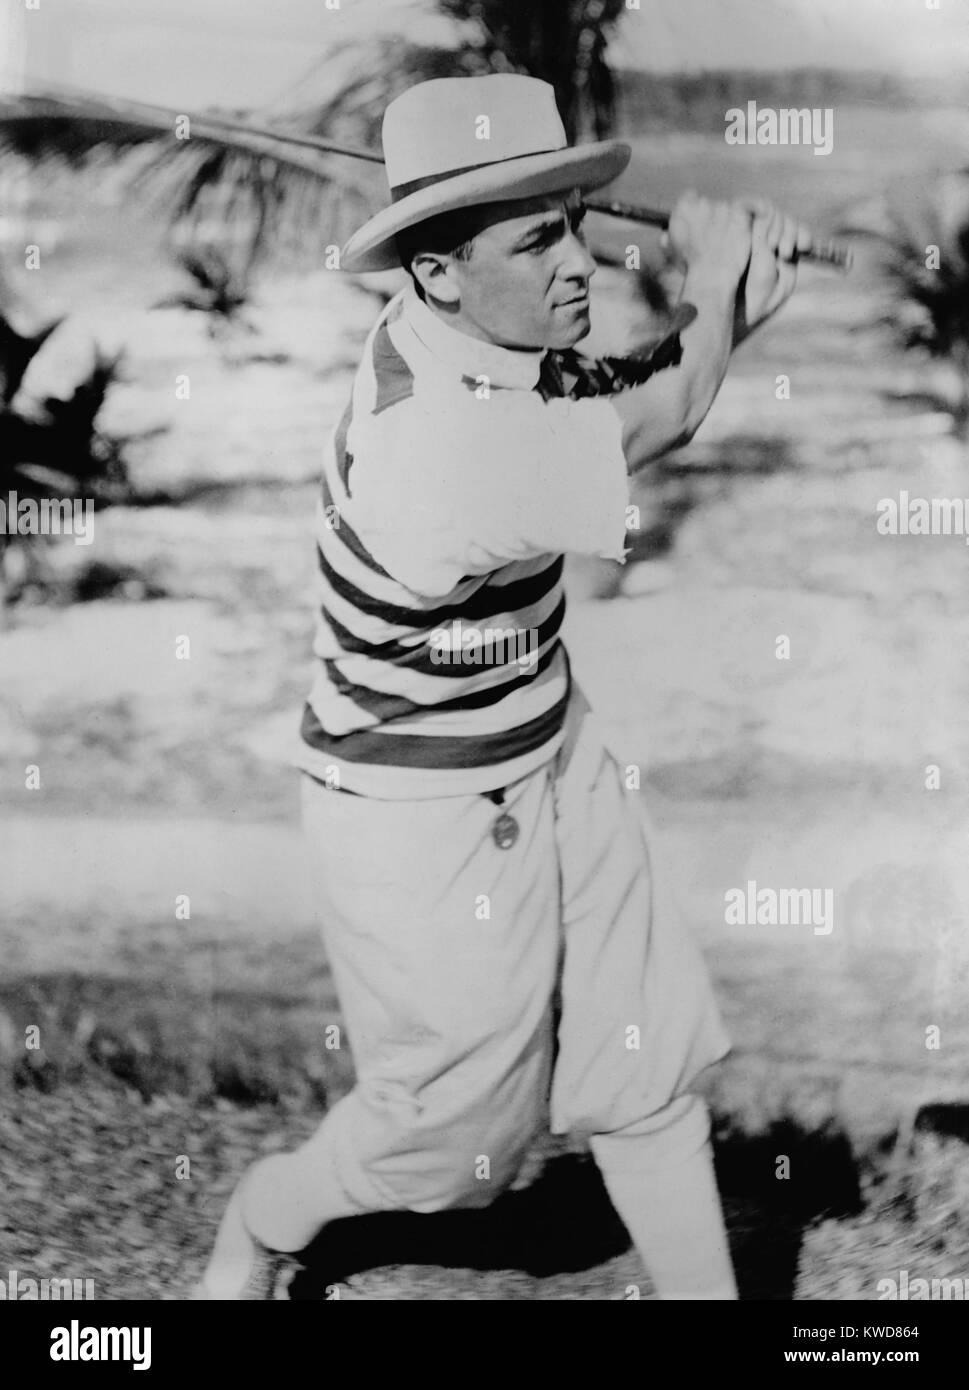 Amerikanischer professioneller Golfspieler Gene Sarazen in Miami, Florida. Die 19-Jährige war genesend von einer Appendektomie. Dez. 1921. (BSLOC 2015 17 116) Stockfoto